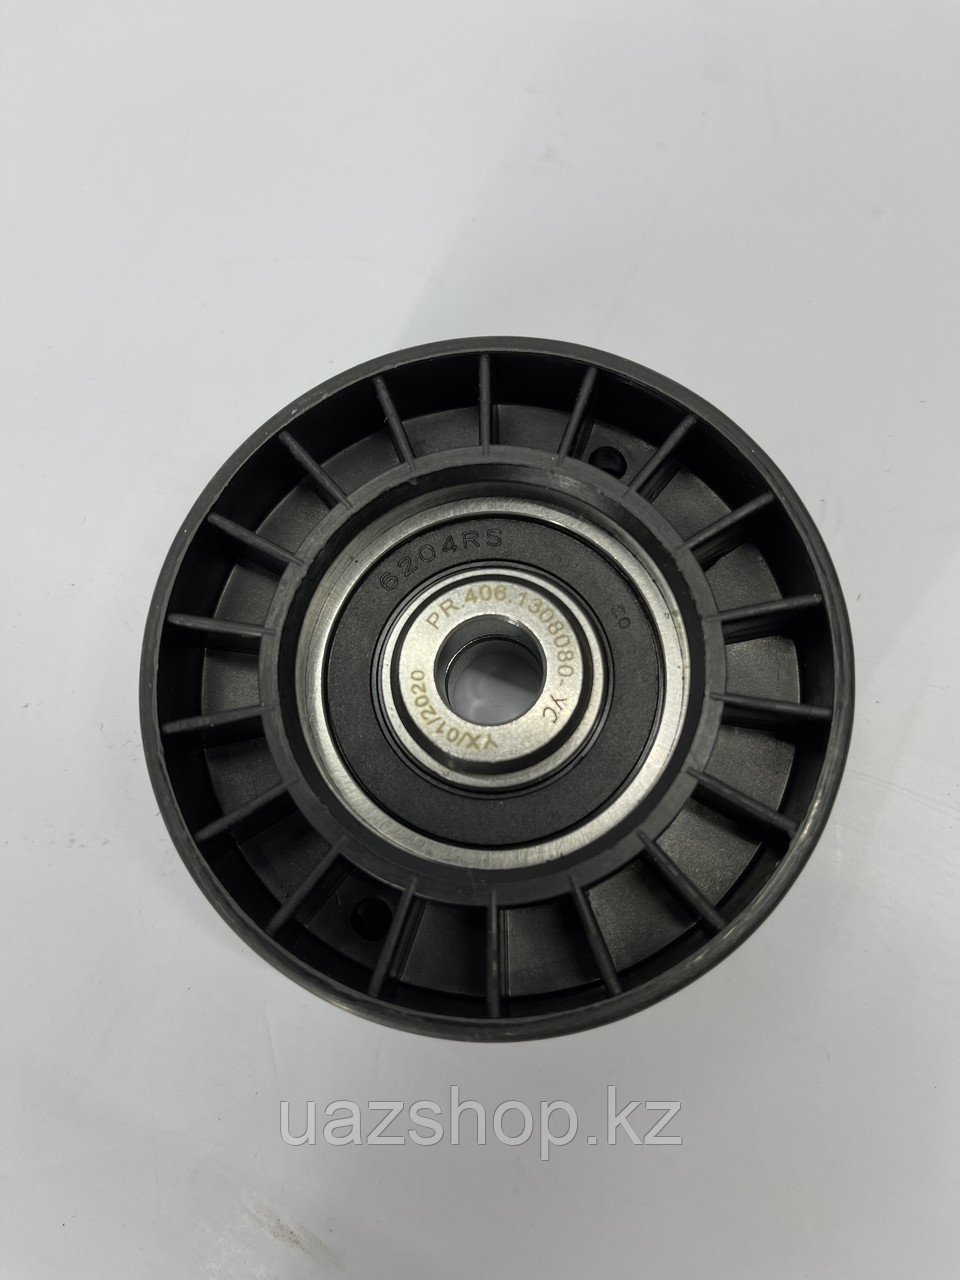 Ролик натяжной для двигателей ЗМЗ 405/406/409 (PRAVT), фото 1